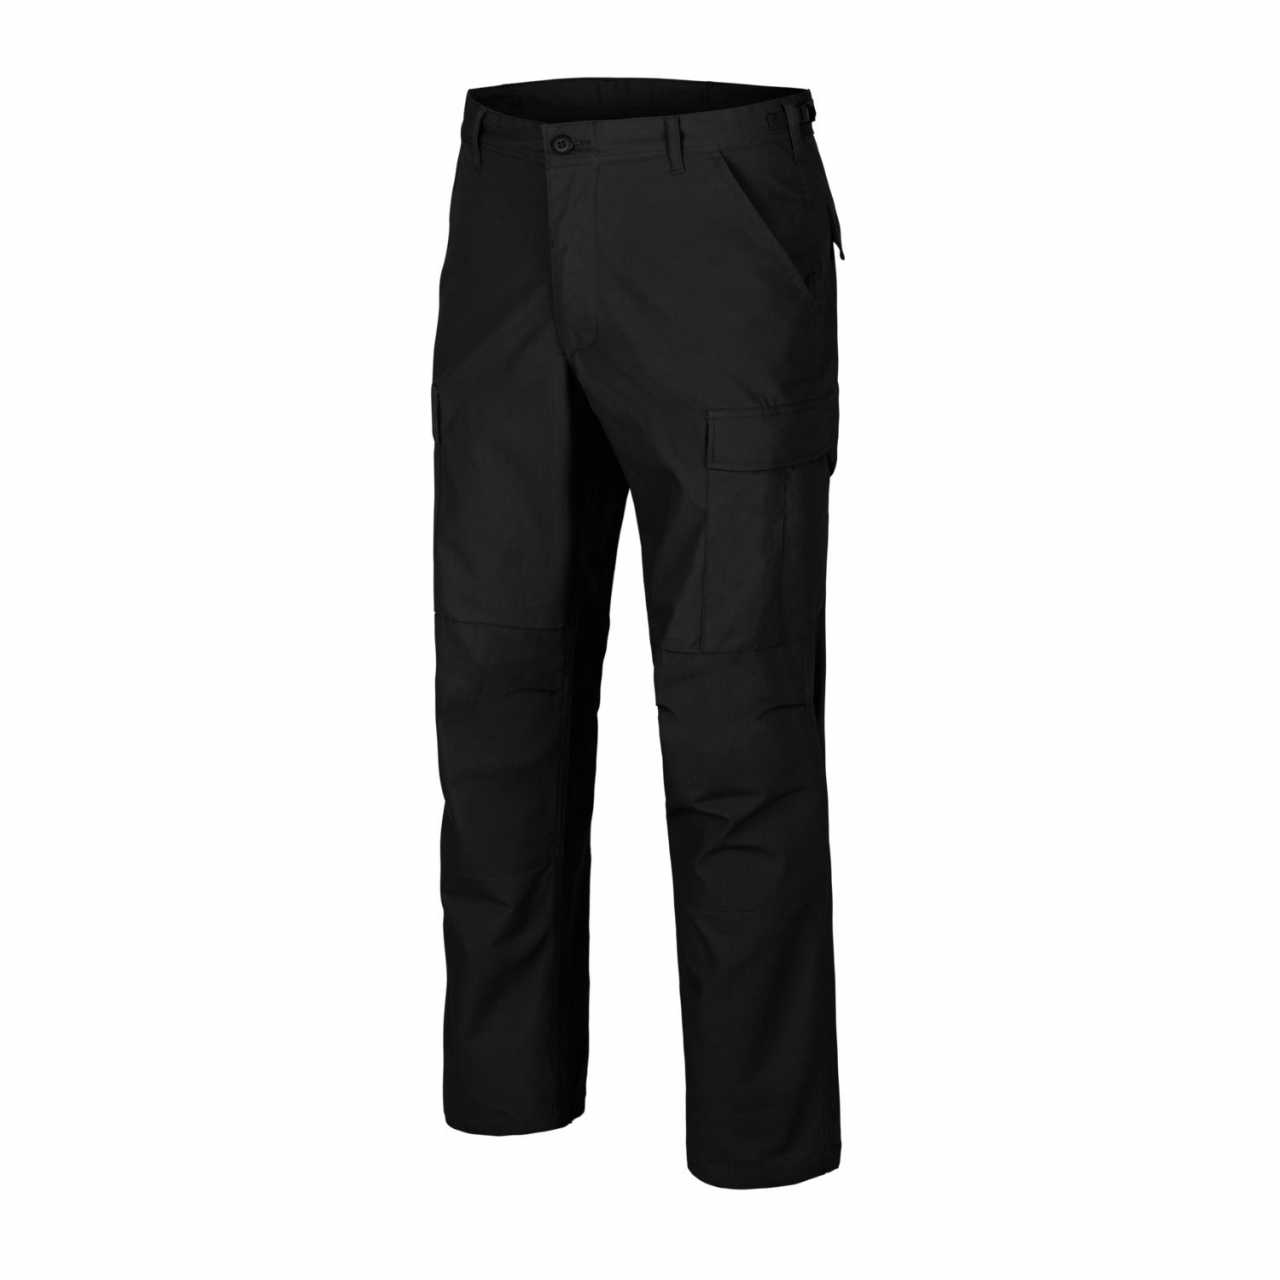 Kalhoty Helikon BDU Pants Poly Ripstop - černé, M